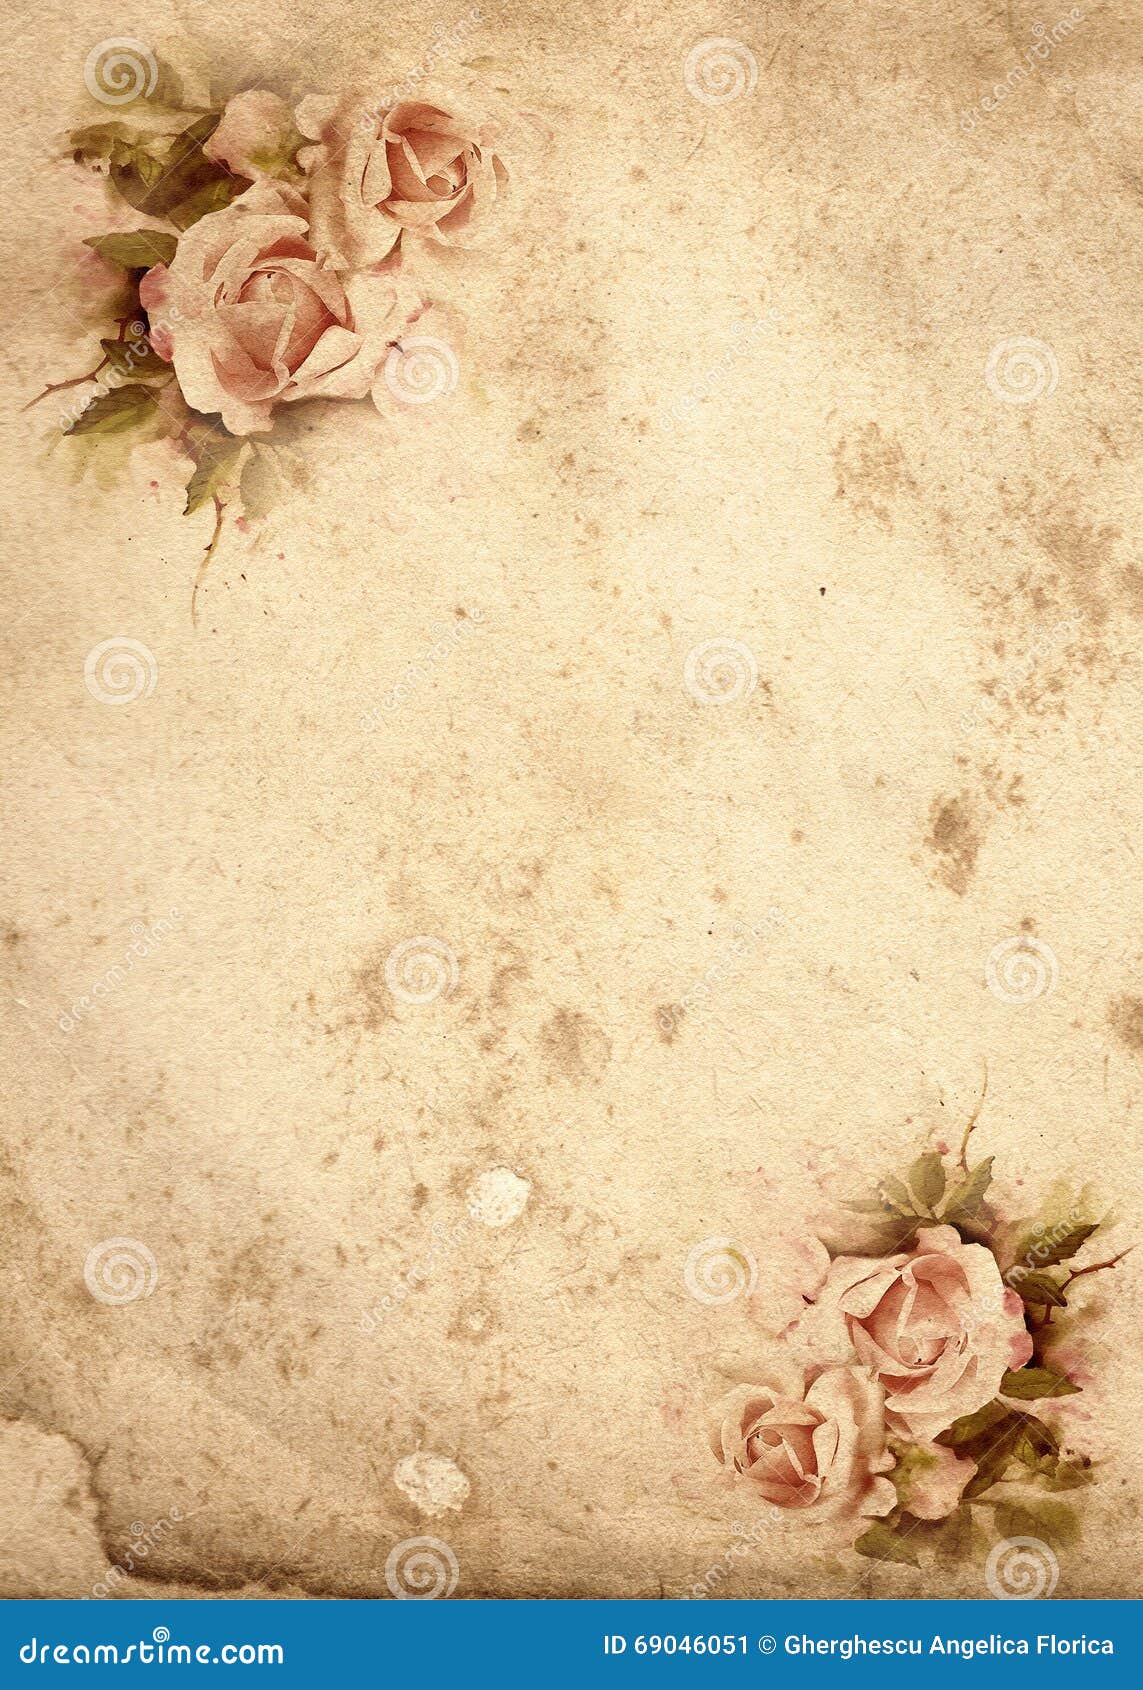 Roses vintage background stock illustration. Illustration of ...